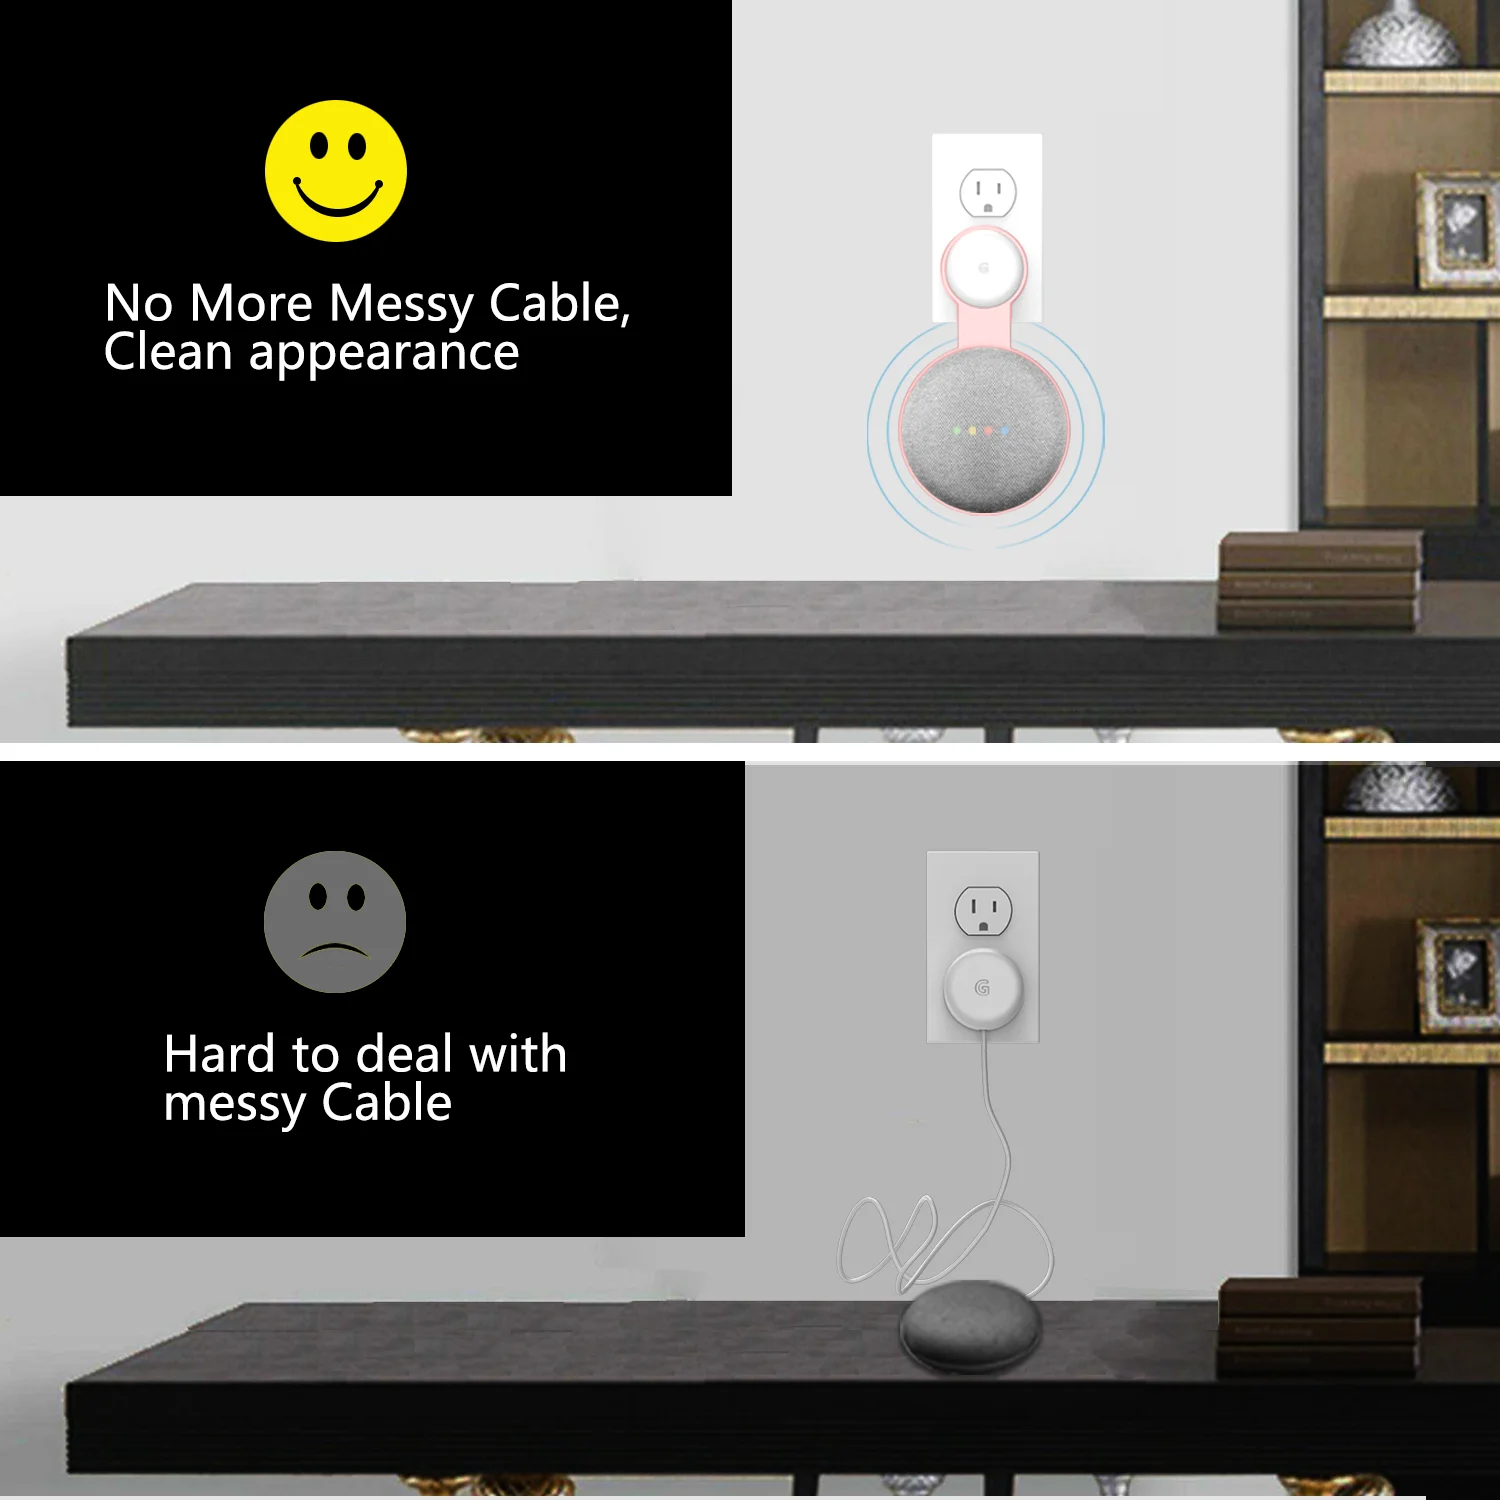 Настенный держатель для Google Home мини с аудио и голосовым помощником спальни